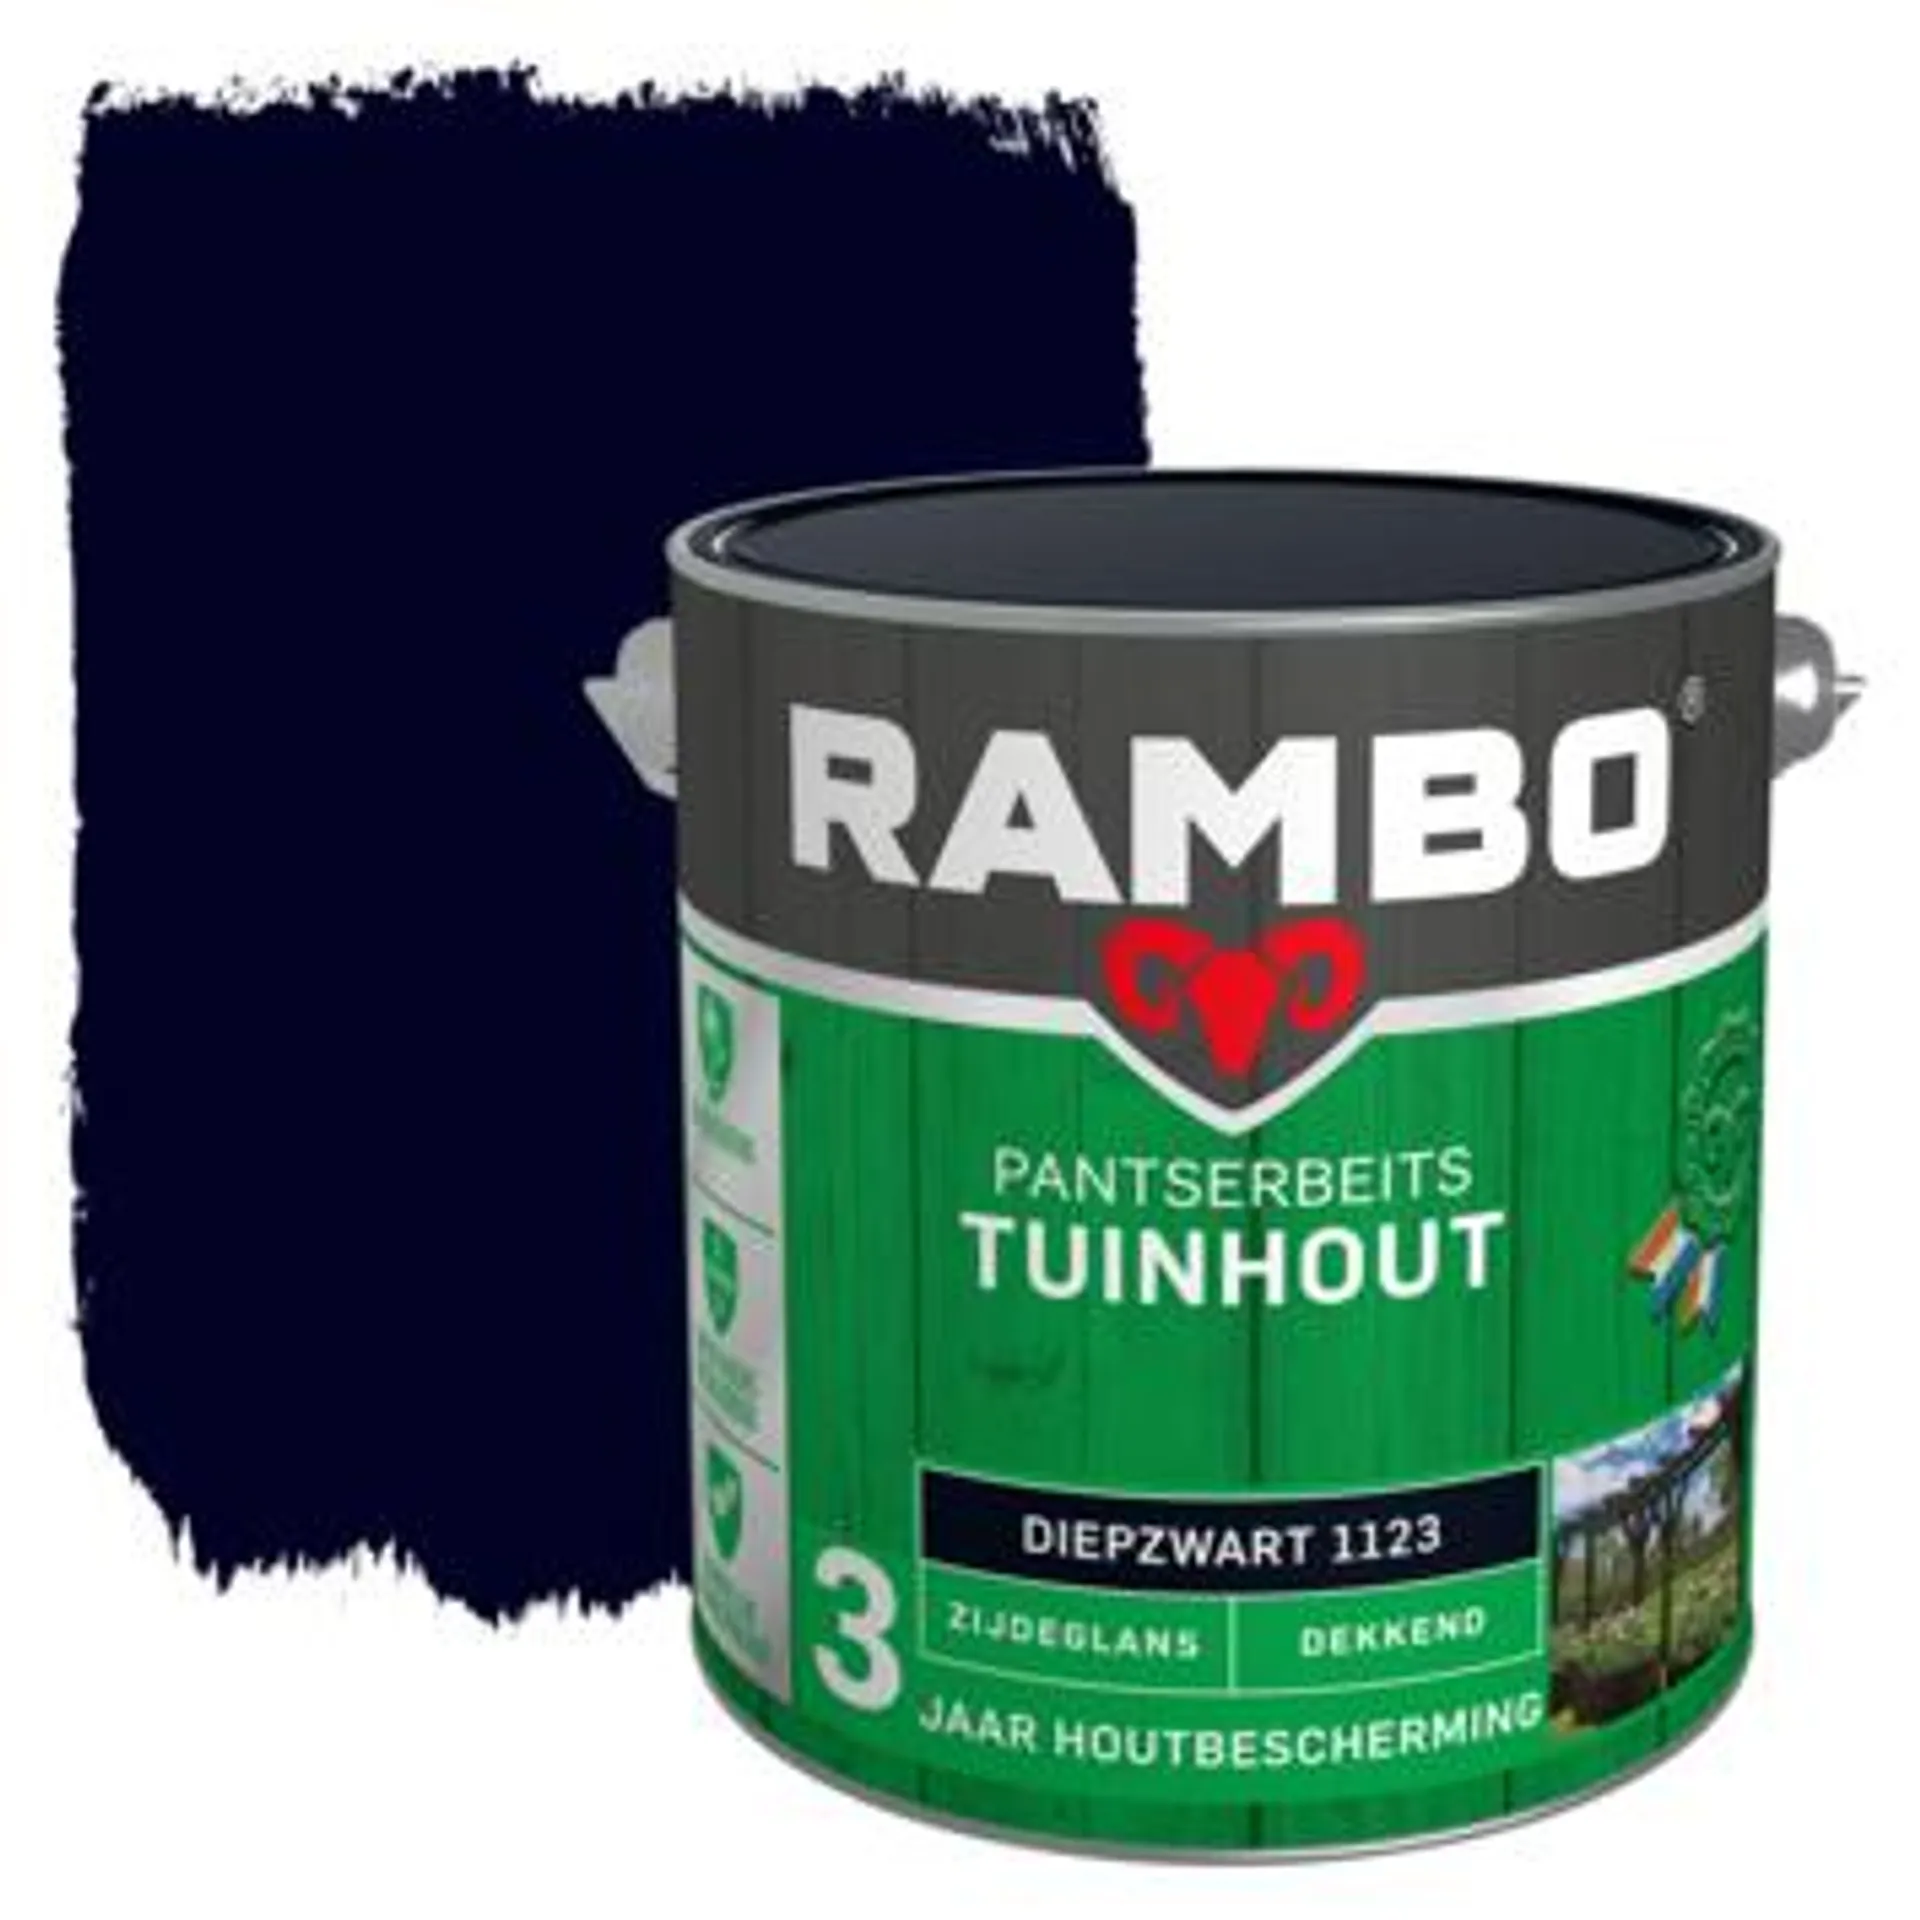 Rambo pantserbeits tuinhout dekkend diepzwart zijdeglans 2,5 liter